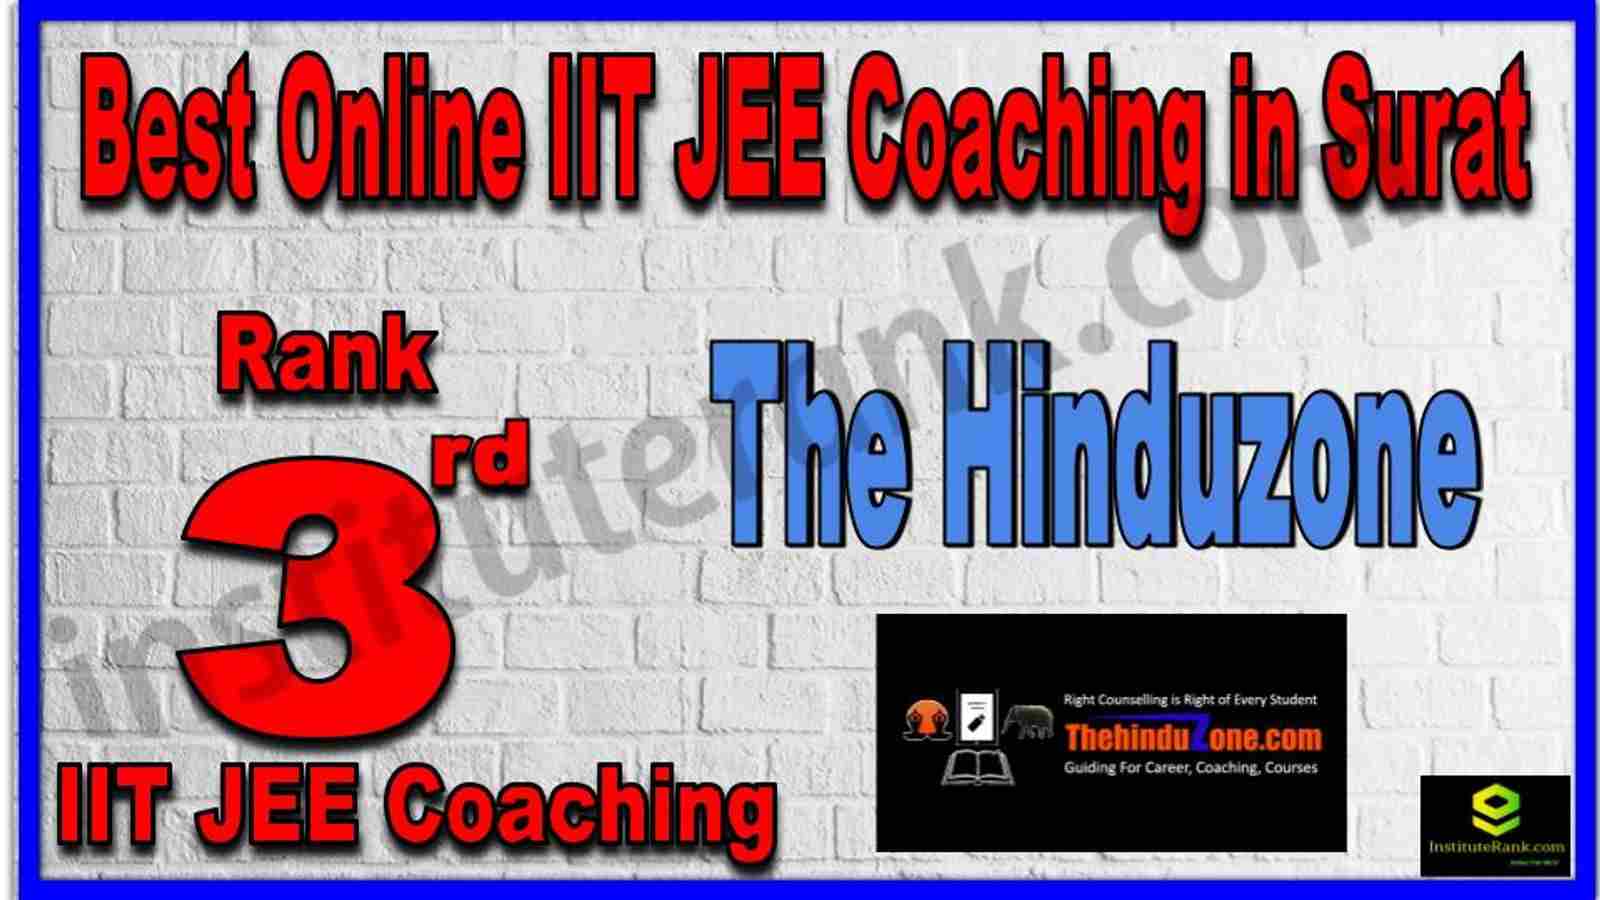 Rank 3rd Best Online IIT JEE Coaching in Surat